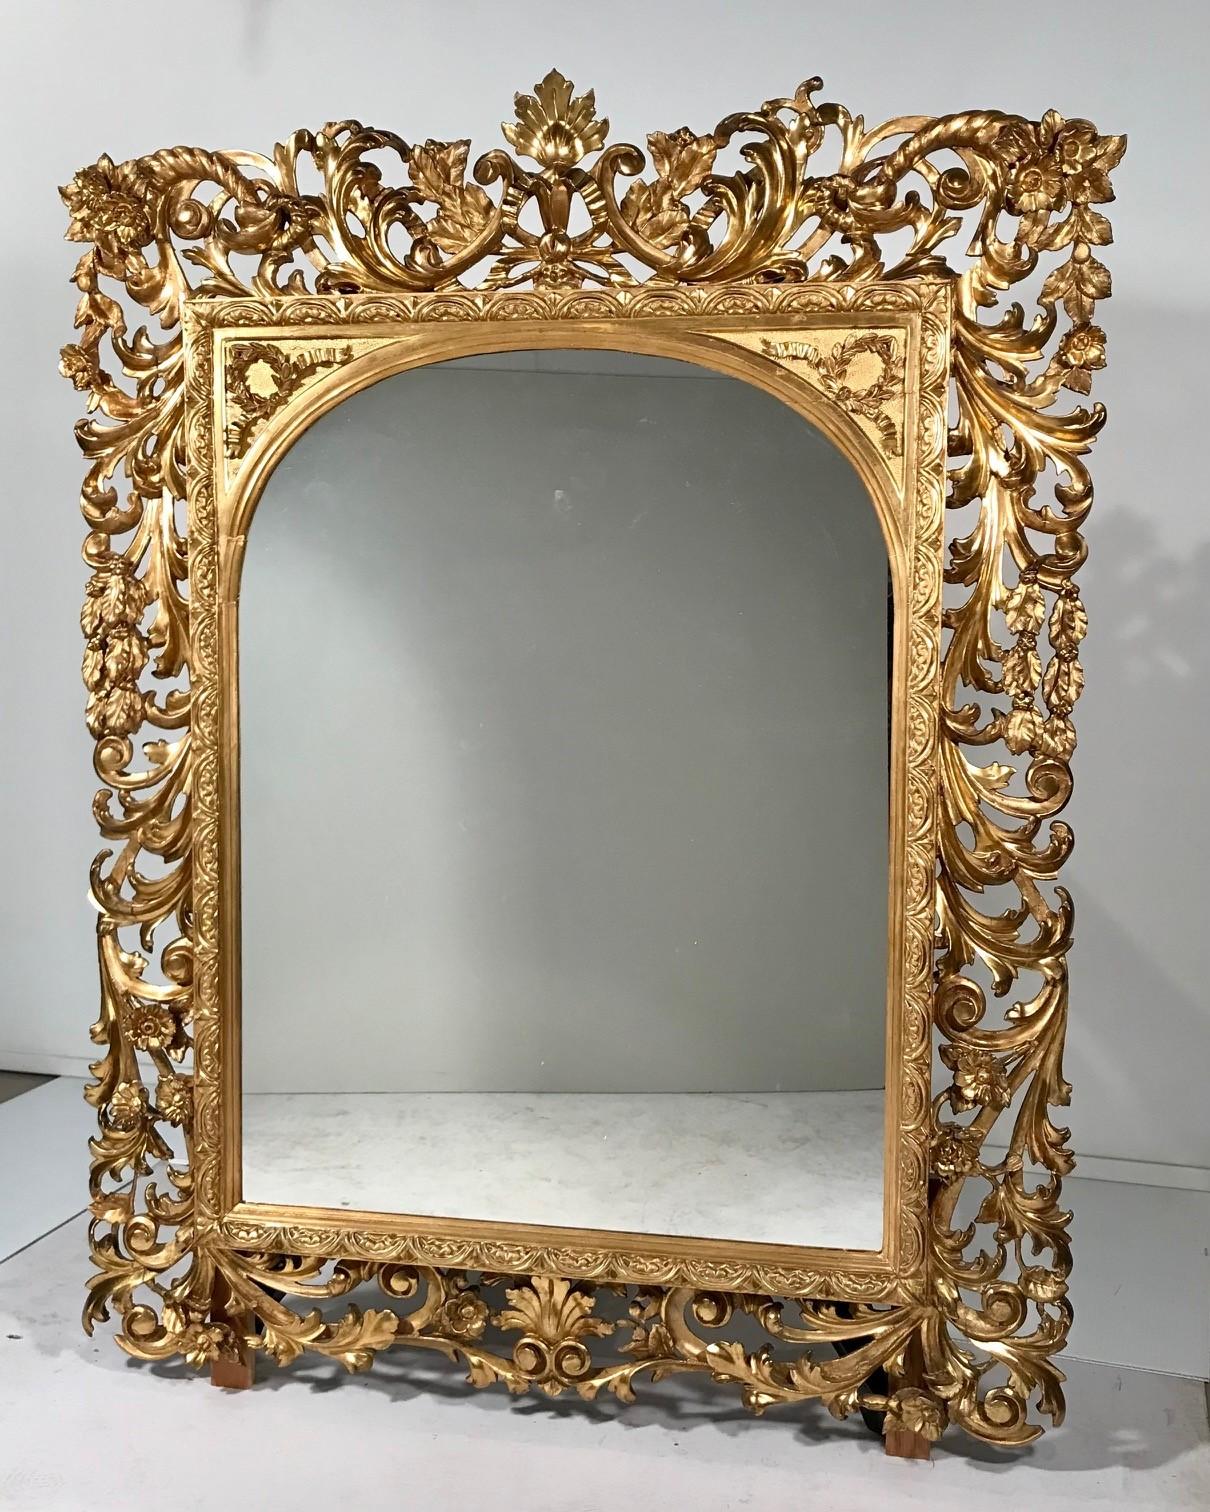 Diese florentinischen Spiegel sind gut geschnitzt und vergoldet, mit Akanthus- und Blattmotiven, die einen lebendigen Hintergrund für die gewölbten Spiegelplatten bilden. Sie sind im Wesentlichen, wenn auch nicht vollständig, identisch. Ein